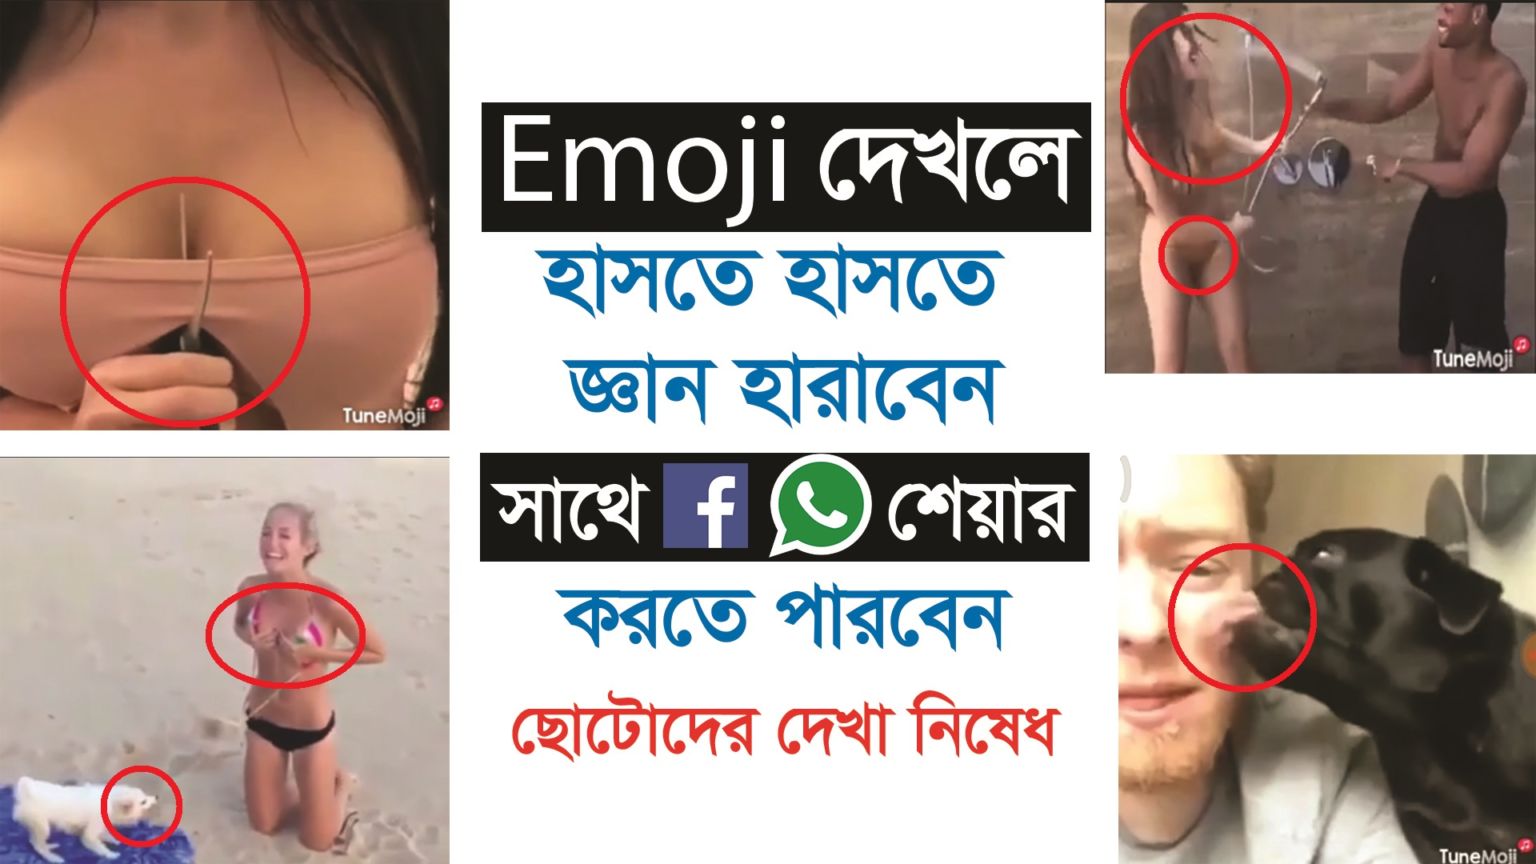 এখন থেকে use করুন Sound সহ Emoji